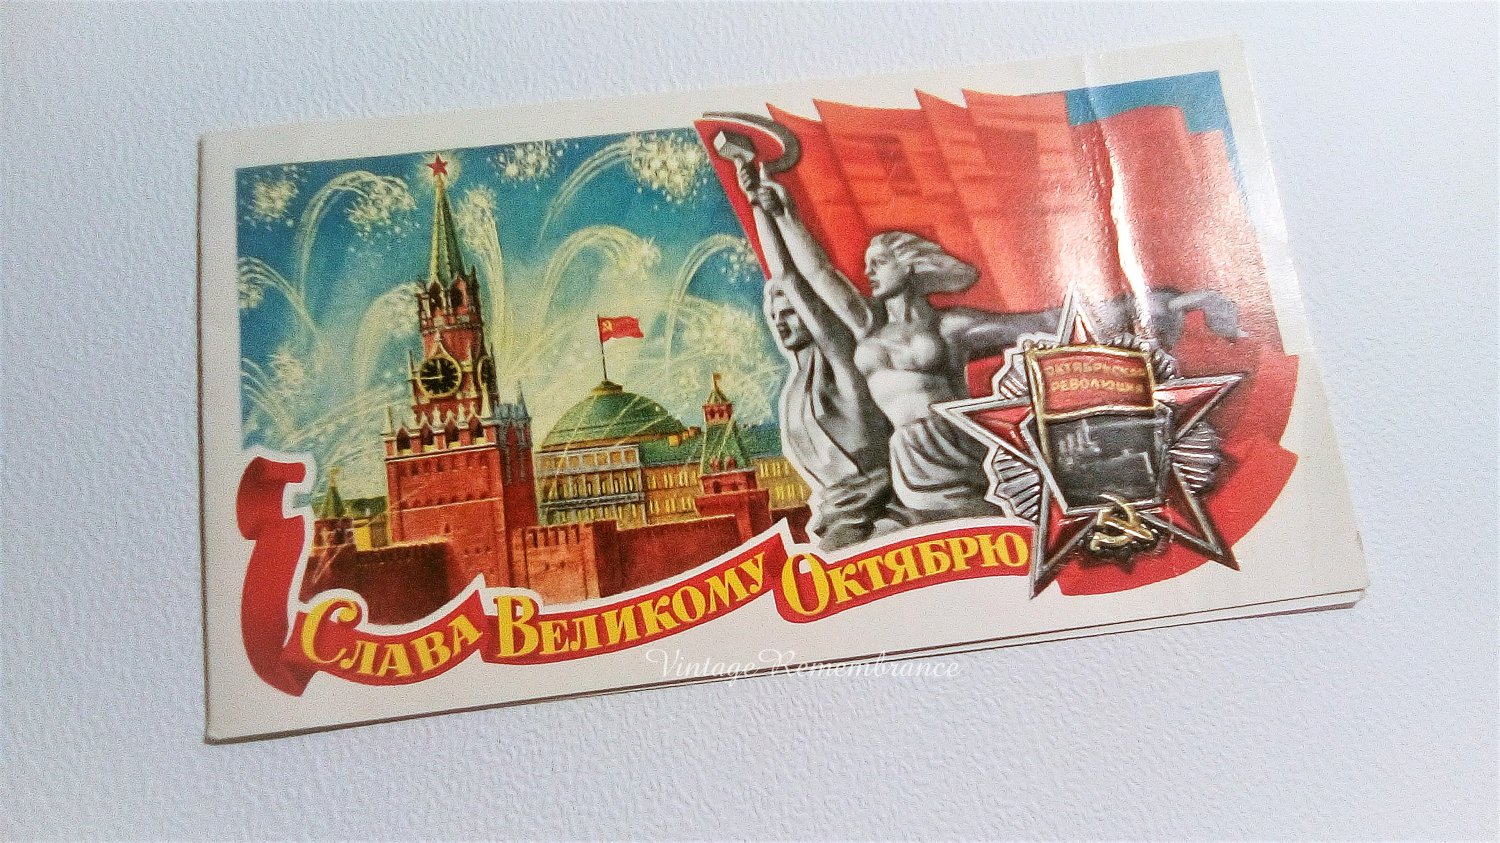 Moscow Kremlin Vintage Postcard October Revolution Soviet Greeting Card Ussr 1970s 